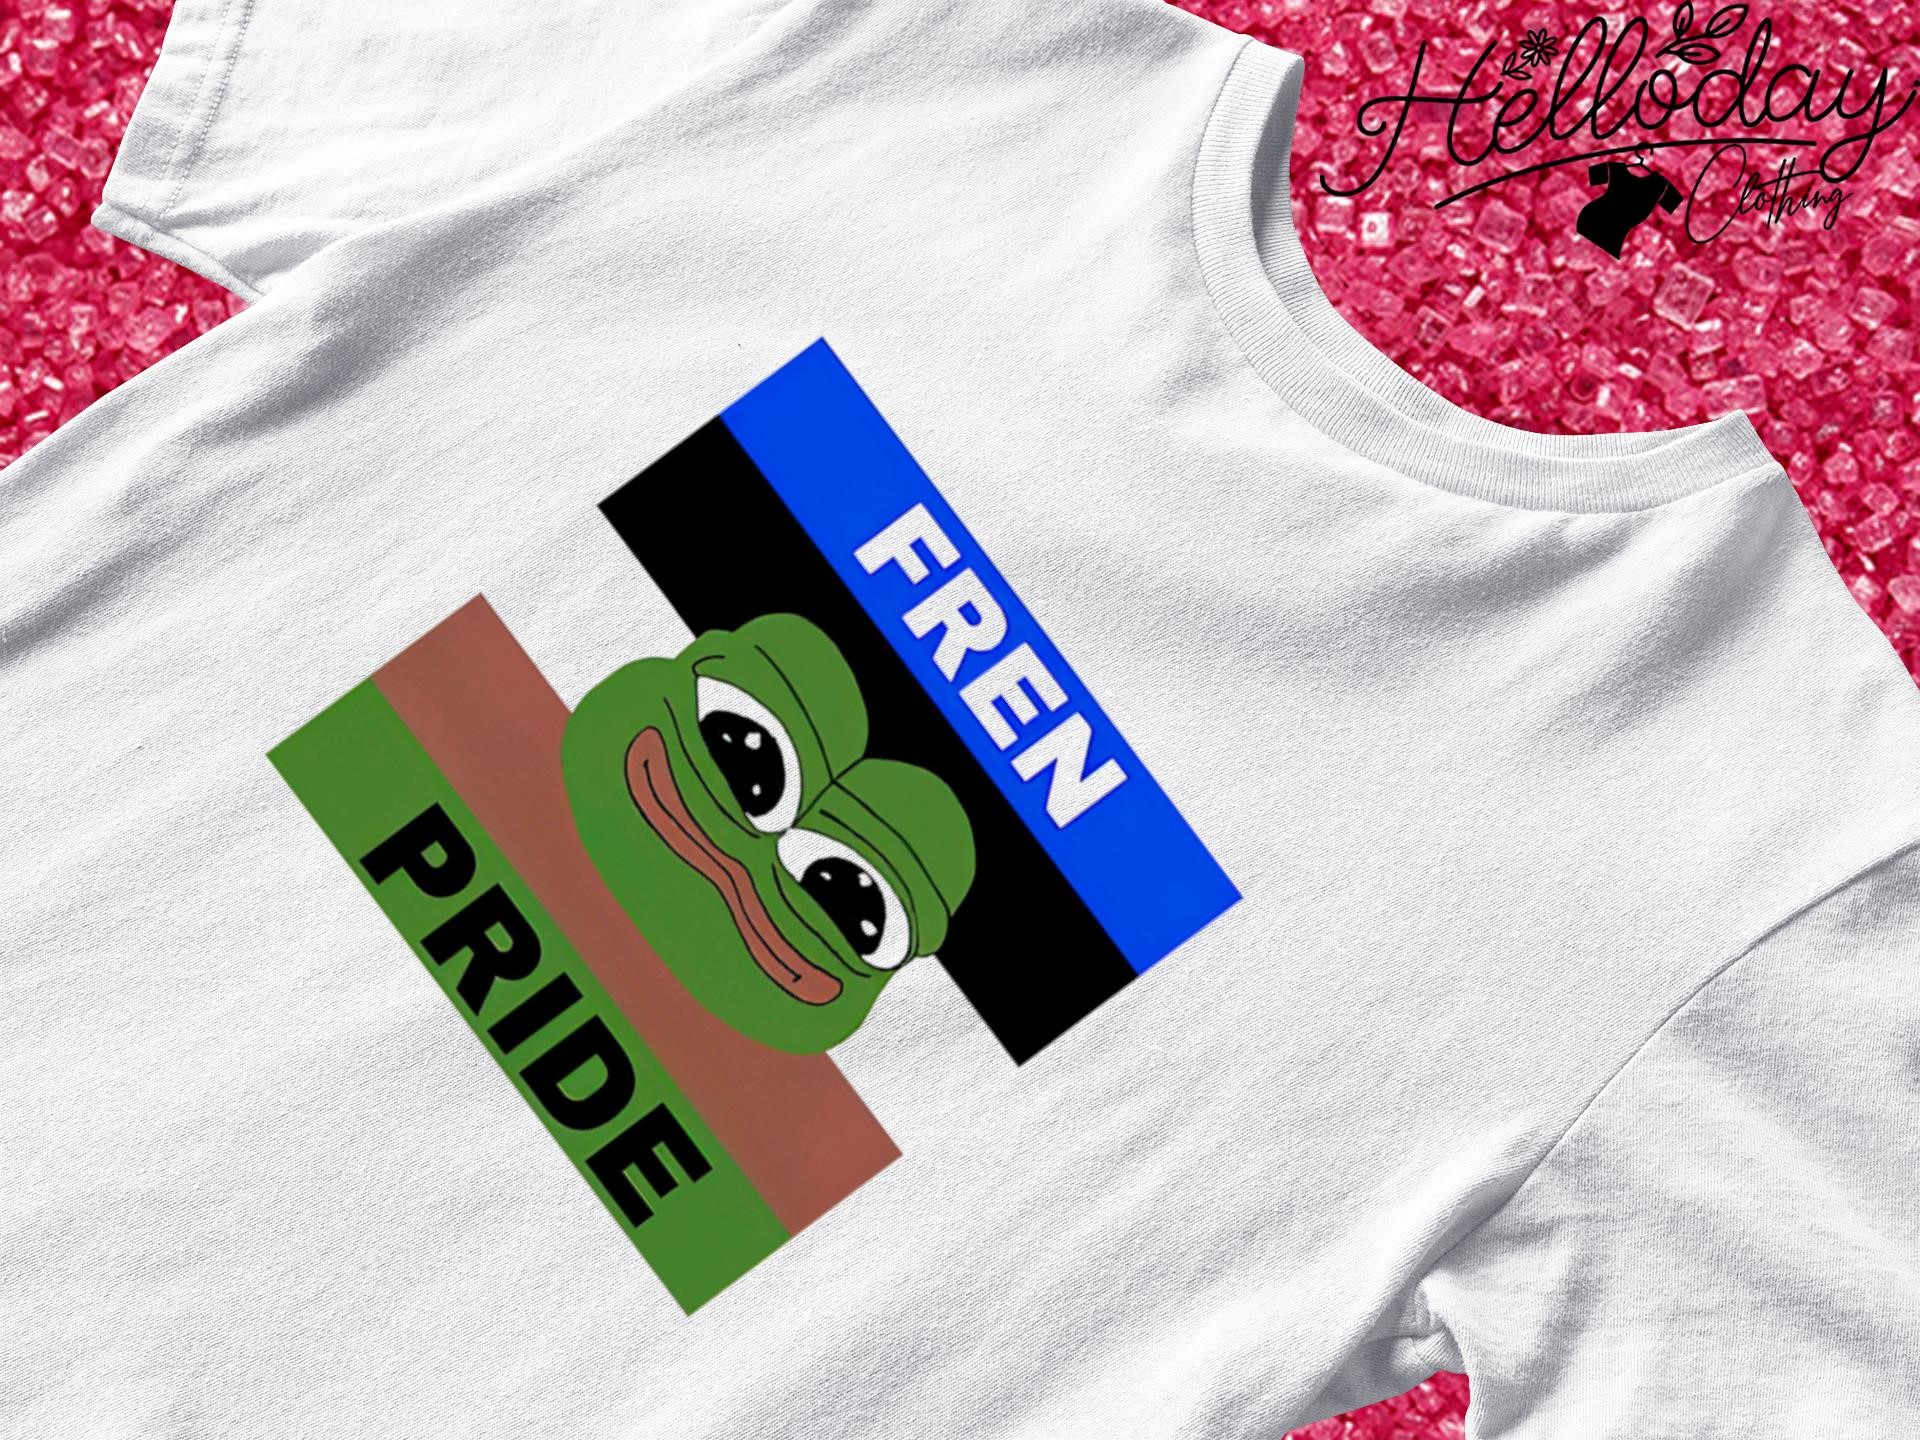 Pepe fren pride shirt